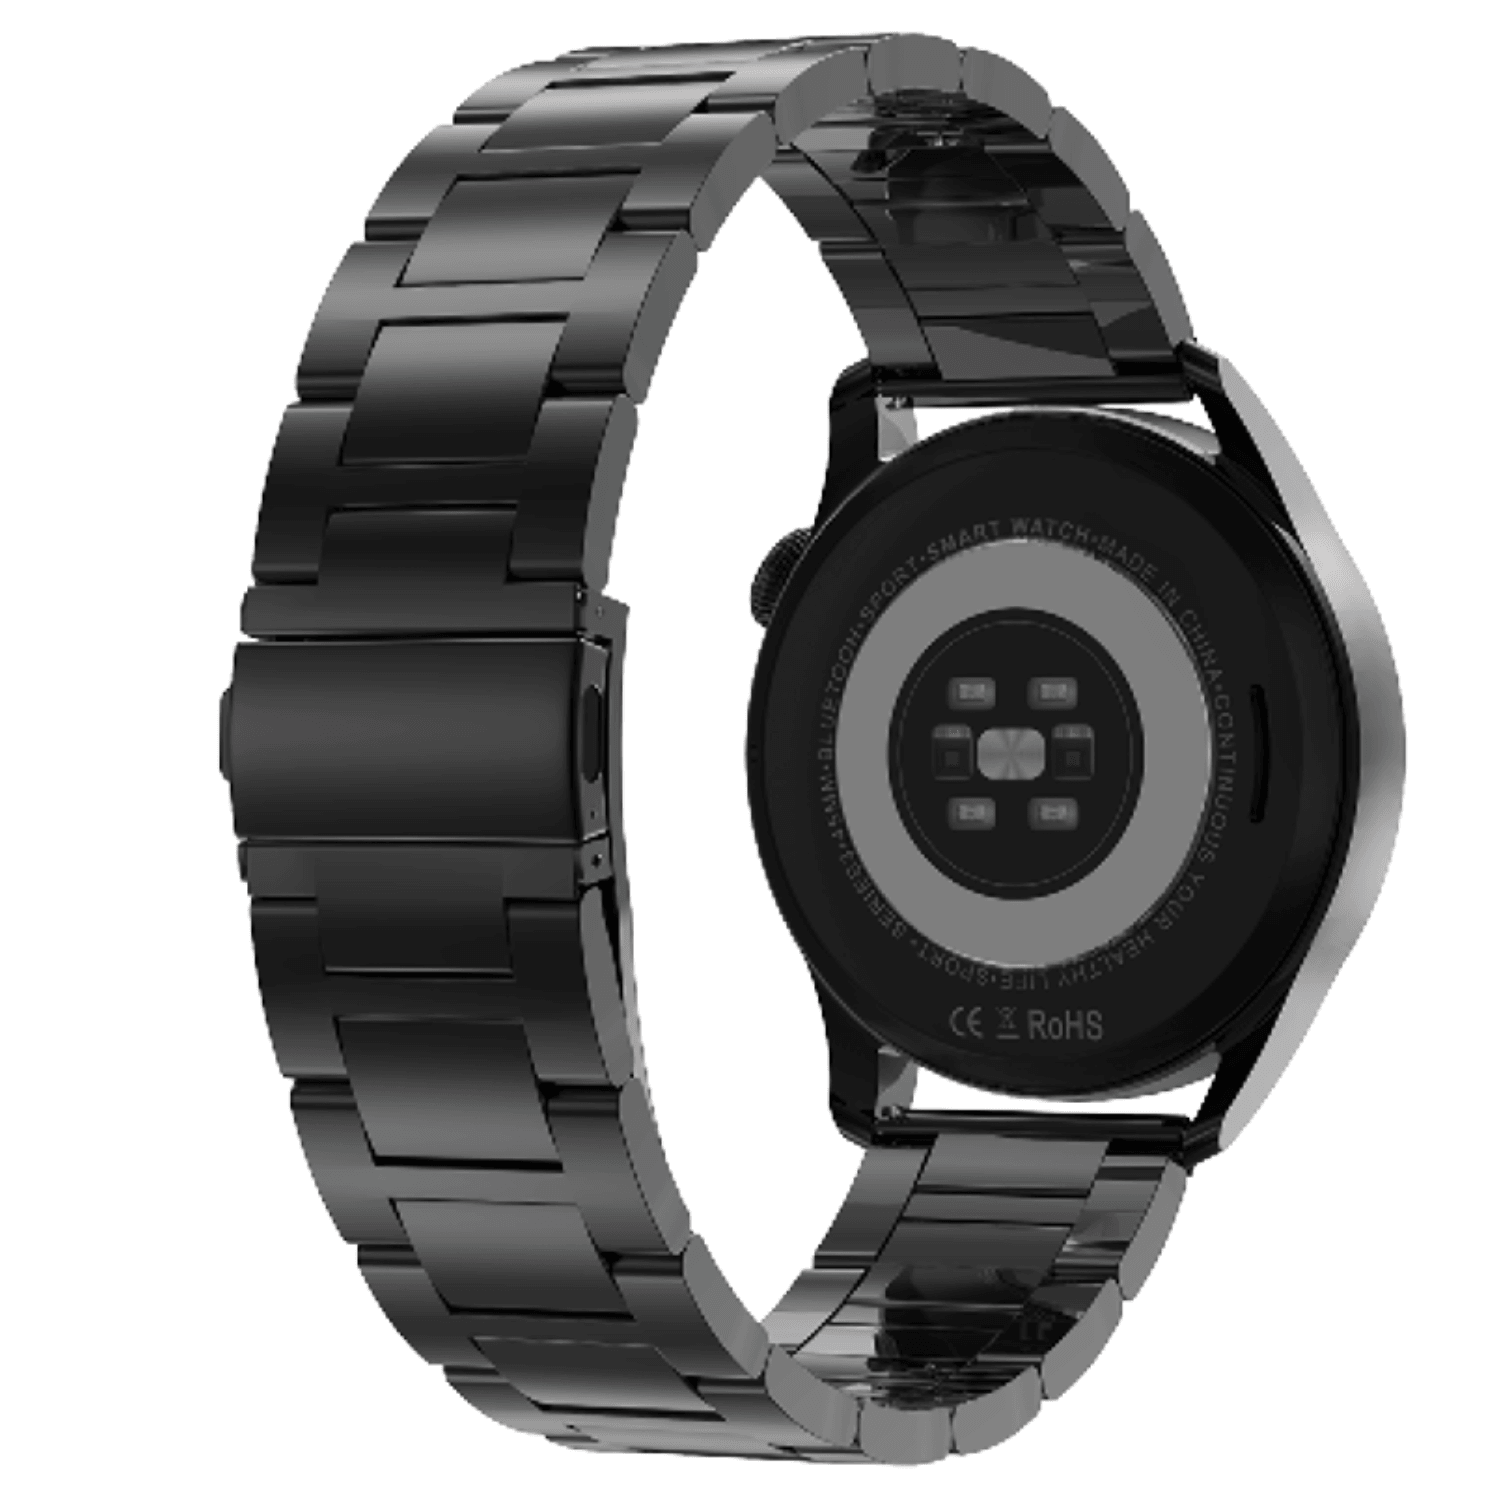 Ρολόι Smartwatch DAS4 Black Steel SP40 203080031, με μαύρο μπρασελέ, πίσω όψη. Διαθέτει πολλαπλές λειτουργίες